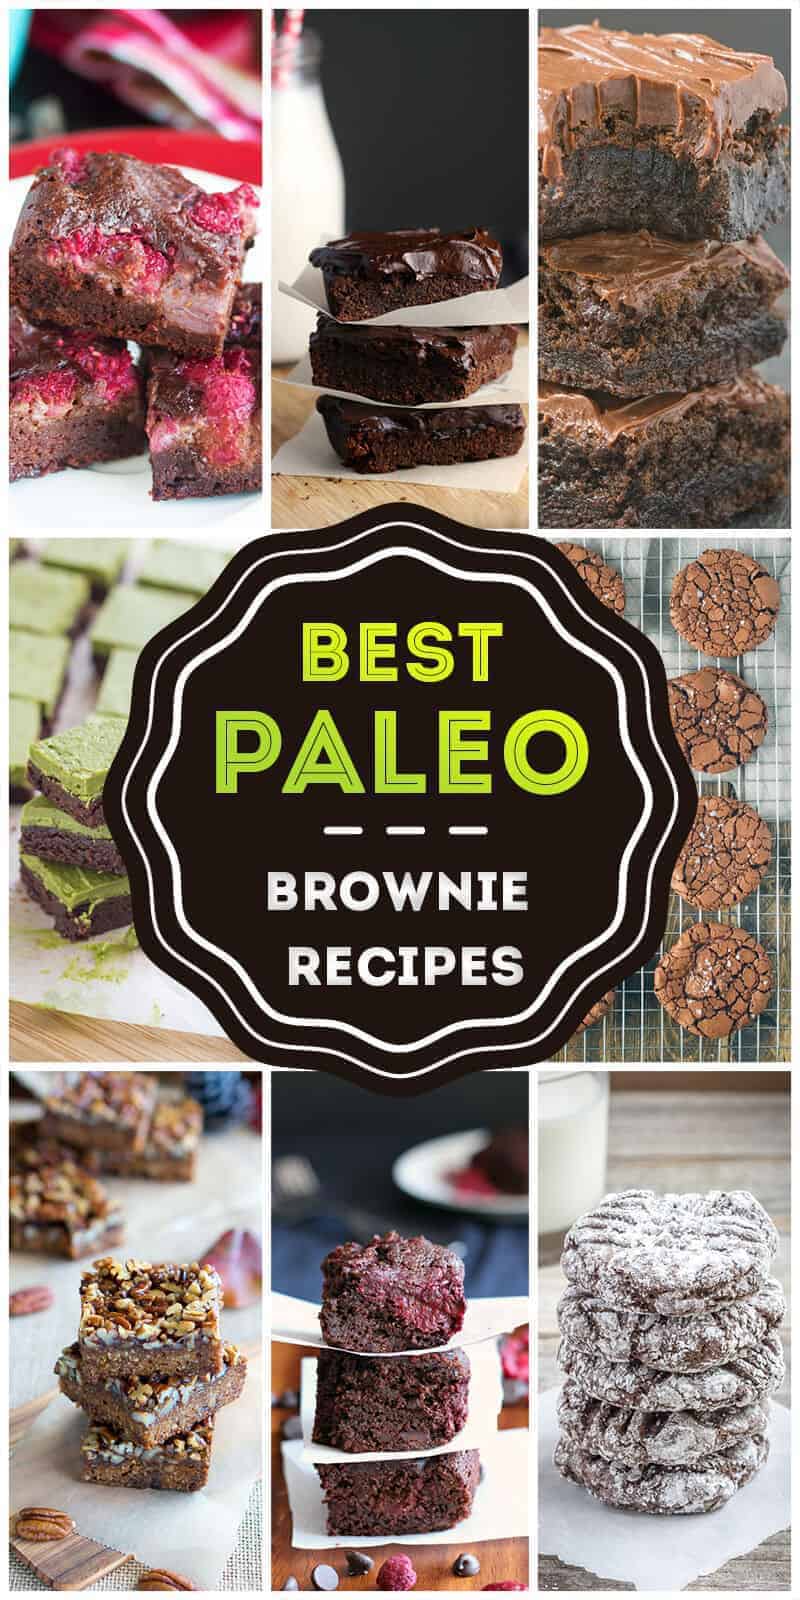 Best Paleo Brownies